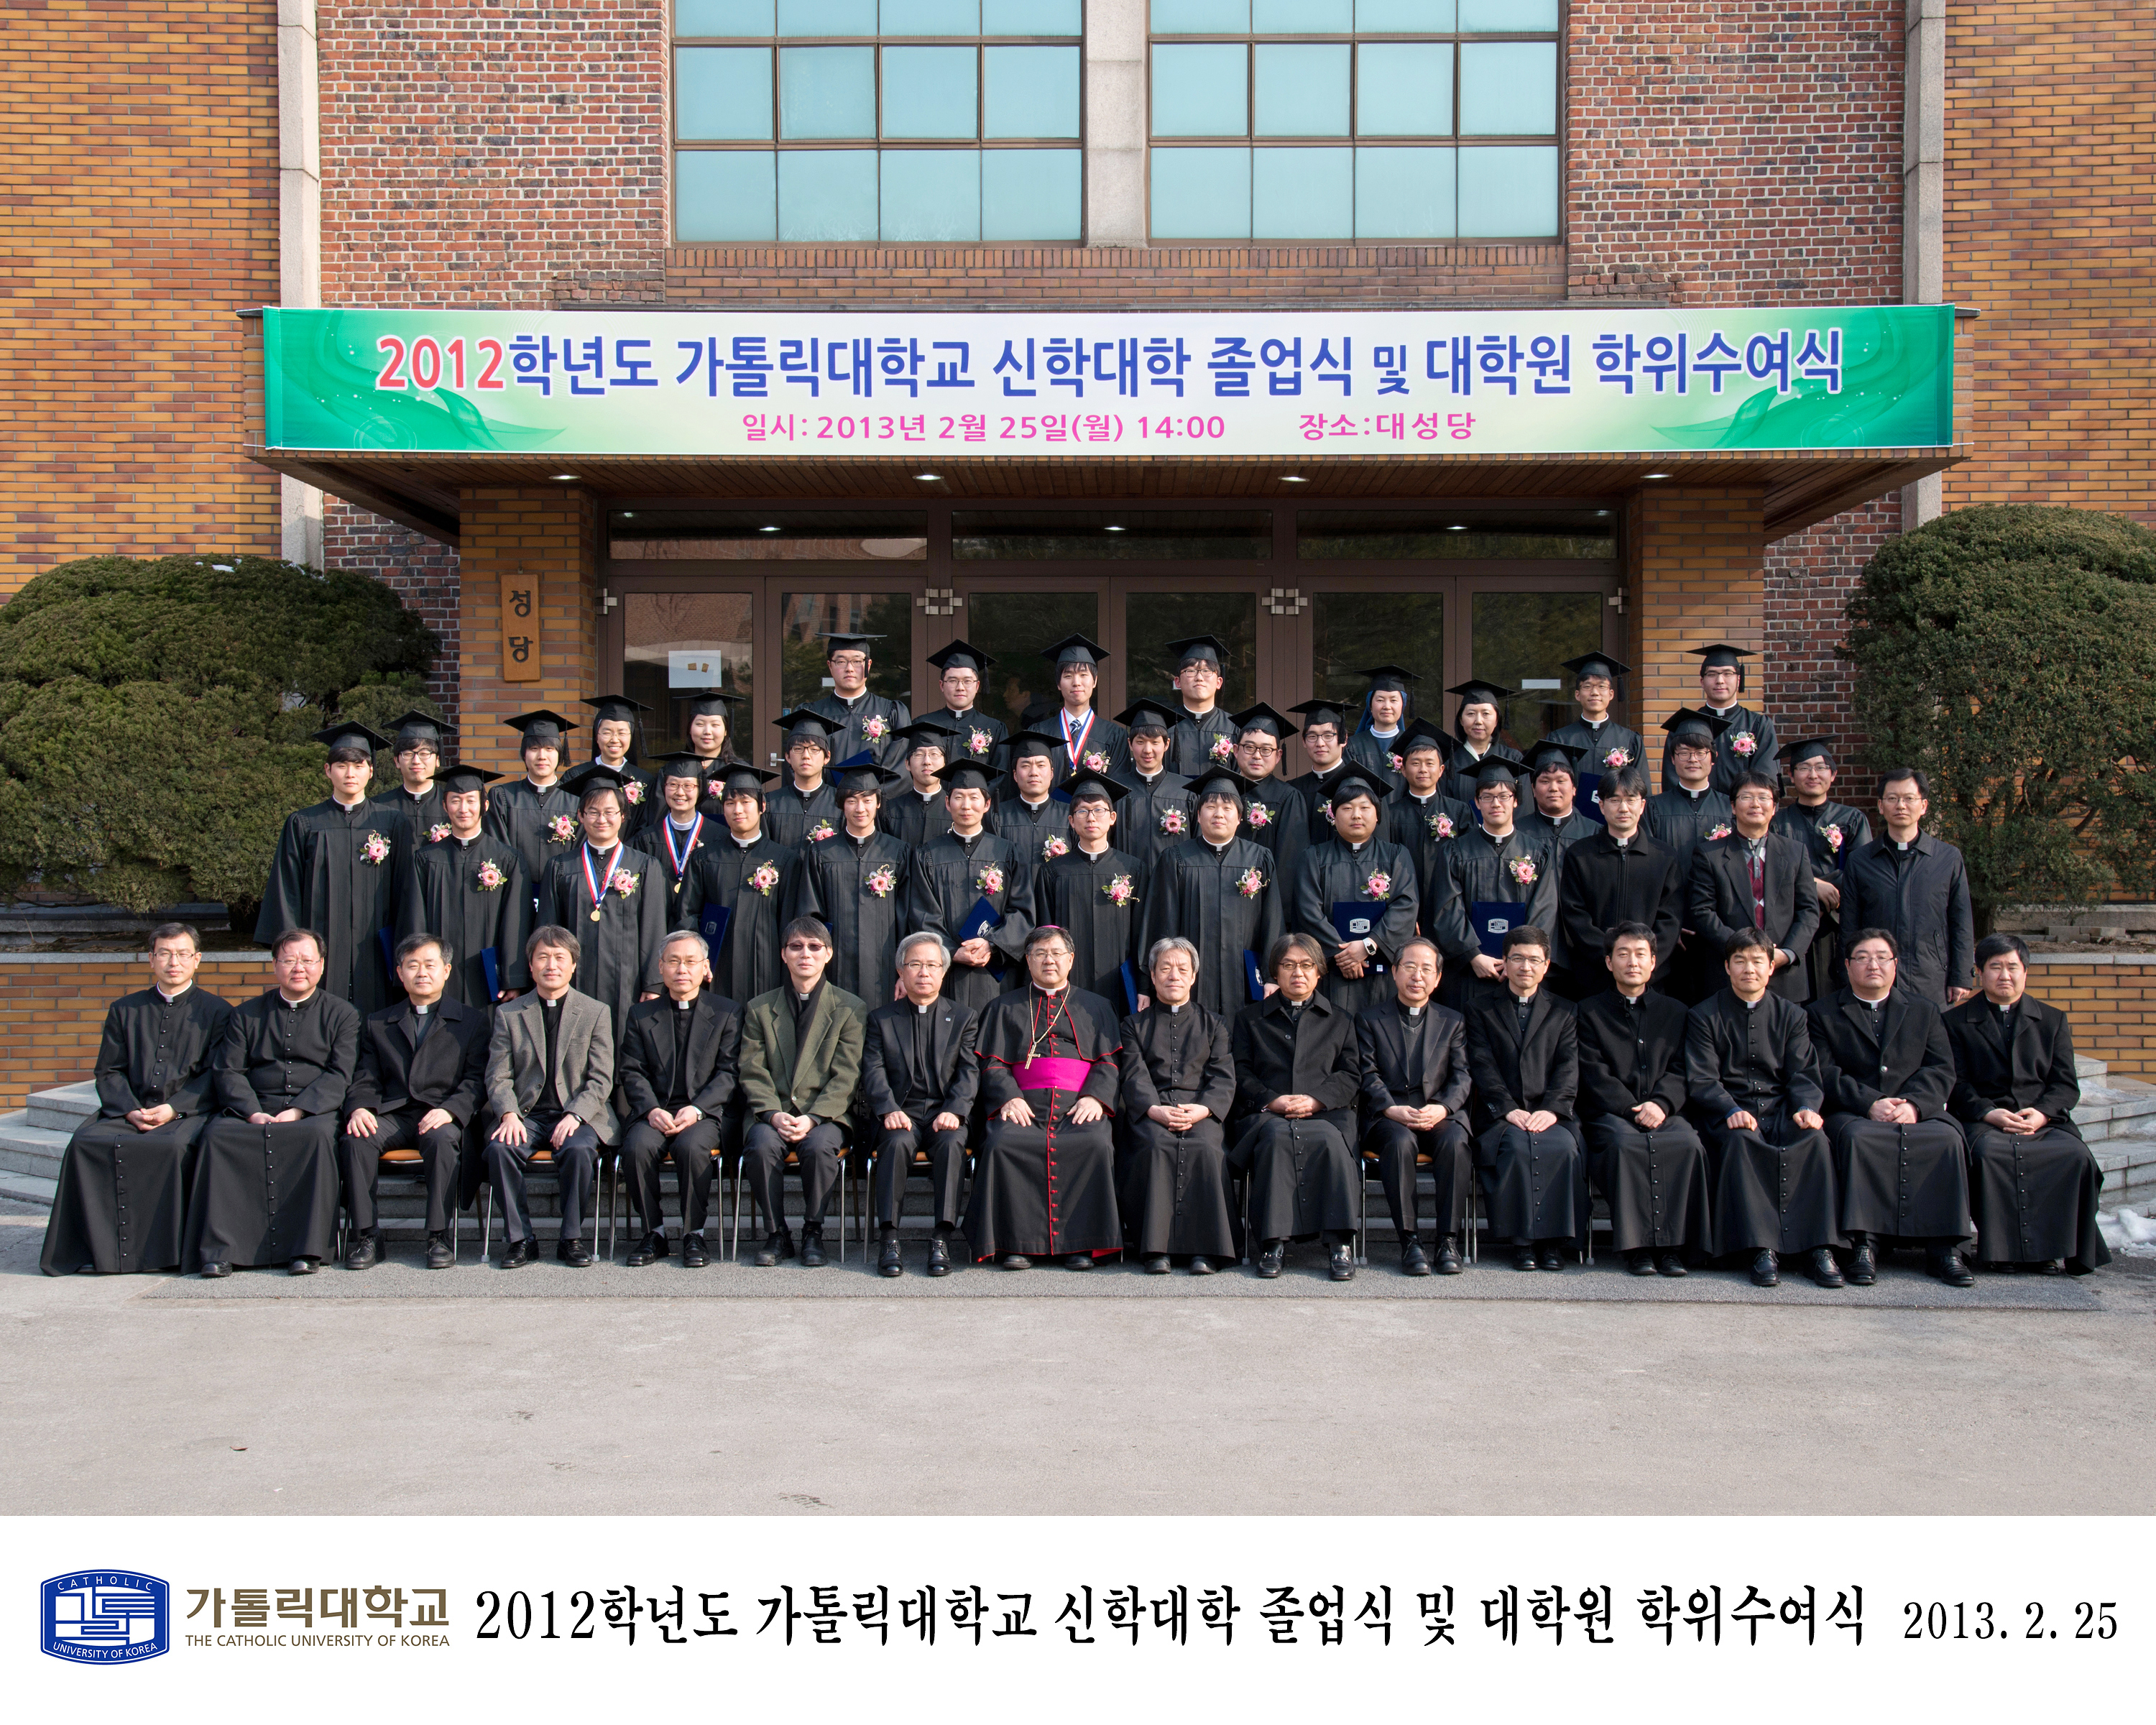 신학대학 졸업식 및 대학원 학위 수여식(2013.2.25)의 관련된 이미지 입니다.